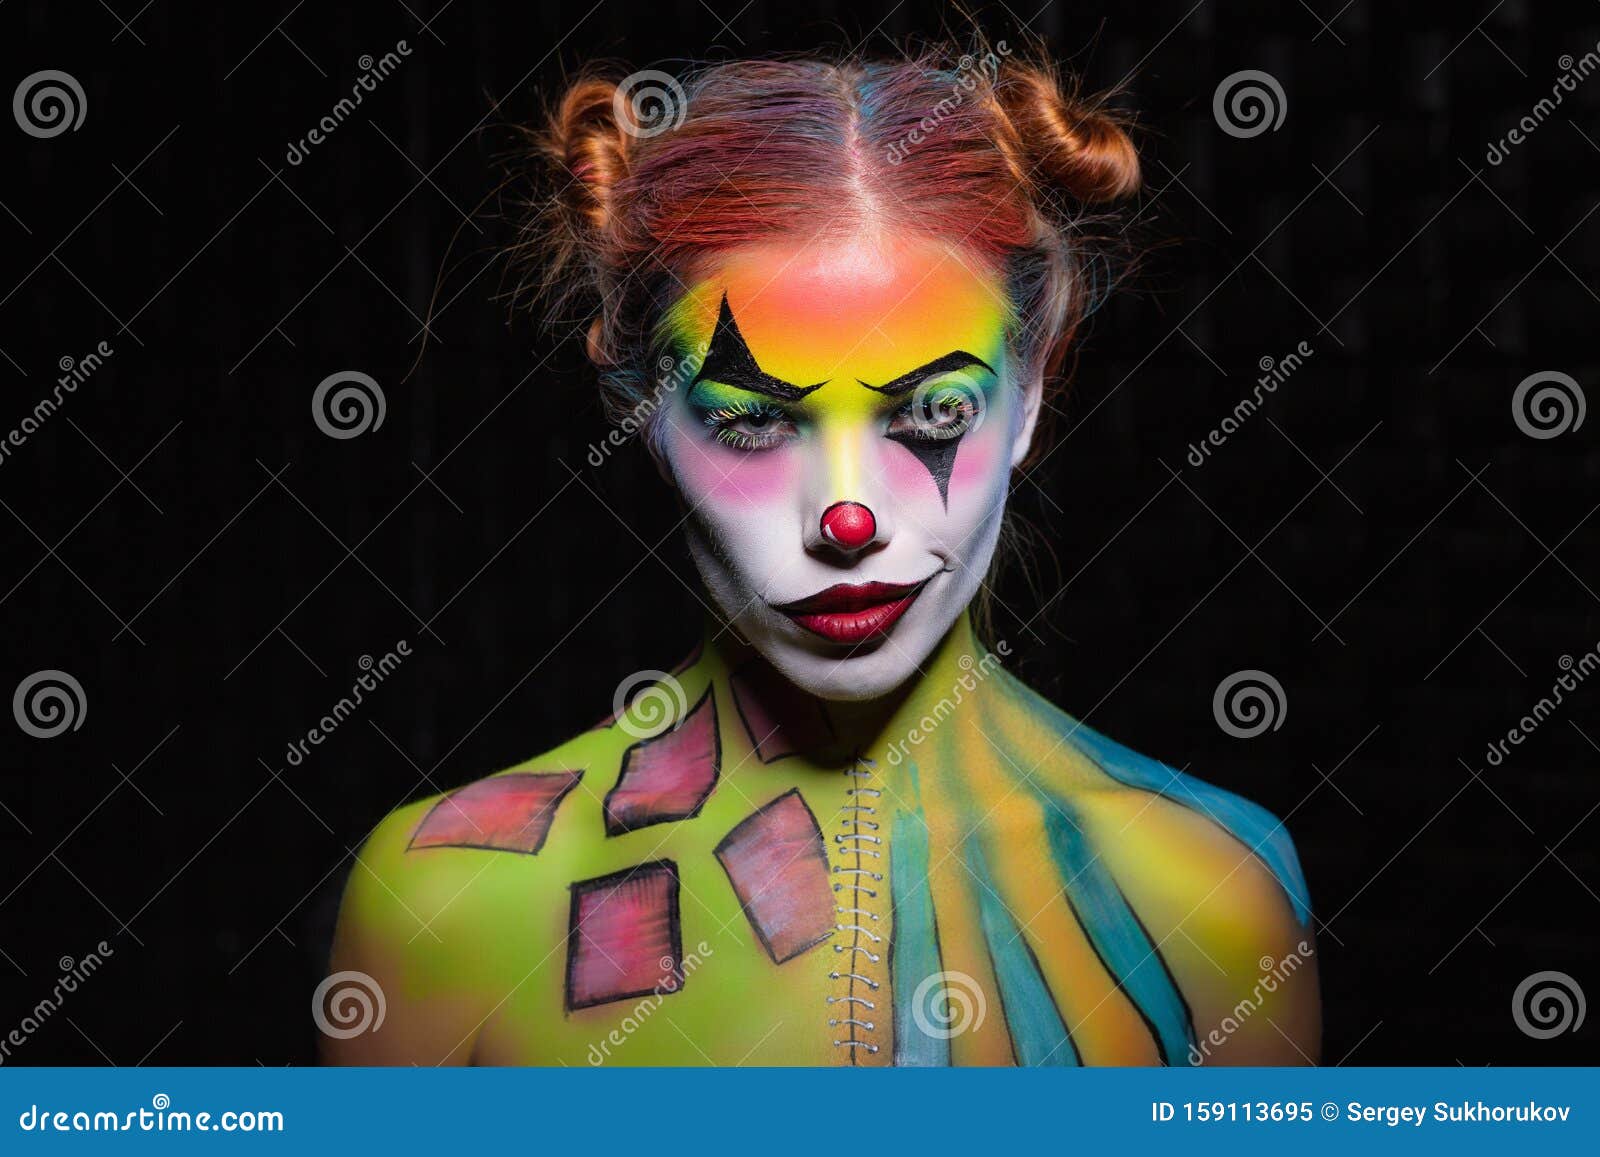 cute clown girl sexy